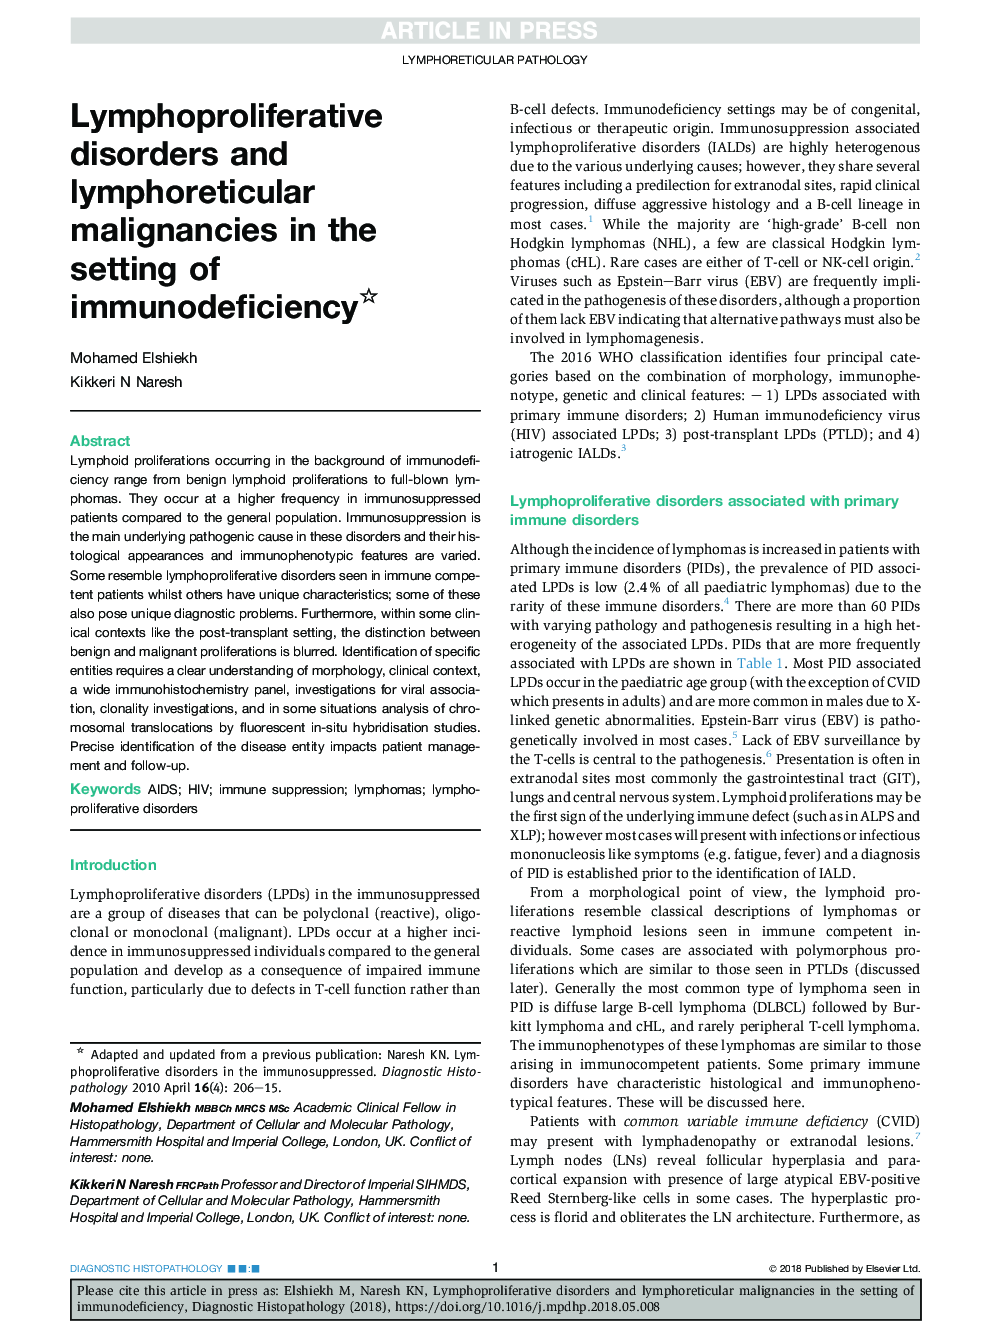 اختلالات لنفوپرولیفراتیو و سرطانهای لنفوئیدیکولت در زمینه کمبود ایمنی 